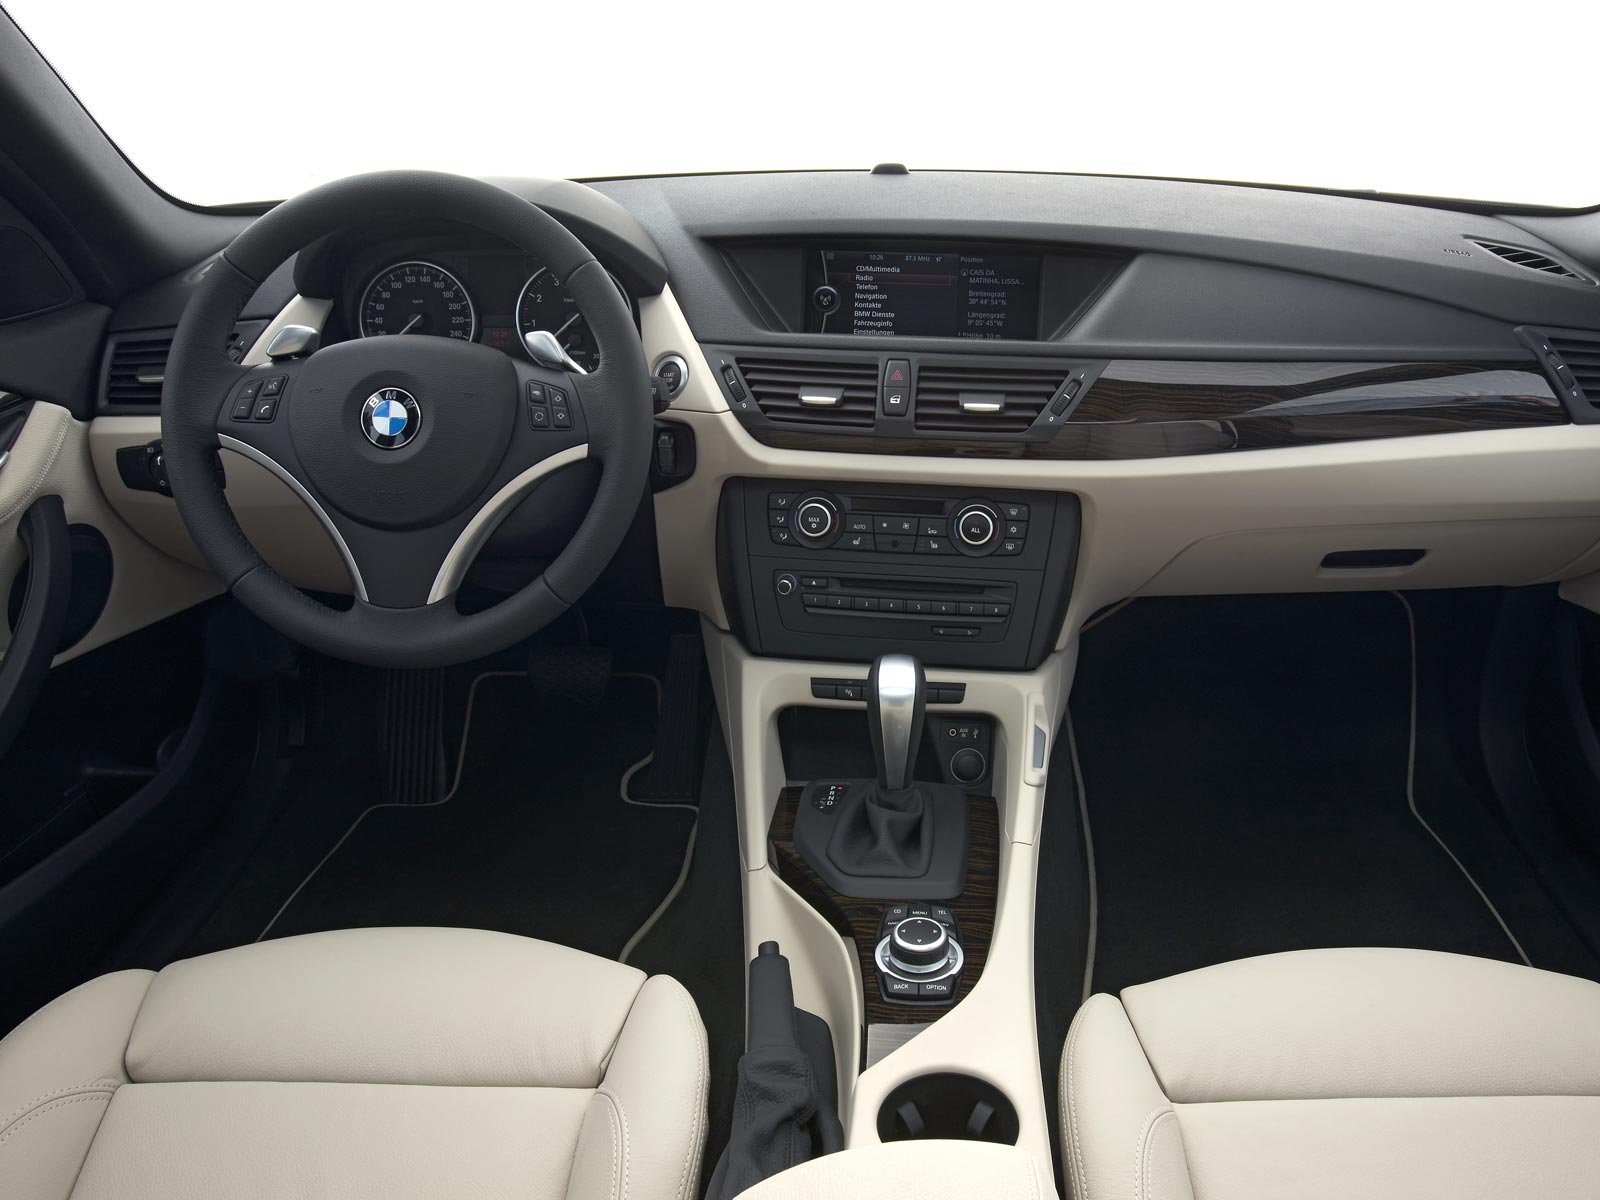 2009 BMW X1 (c) BMW